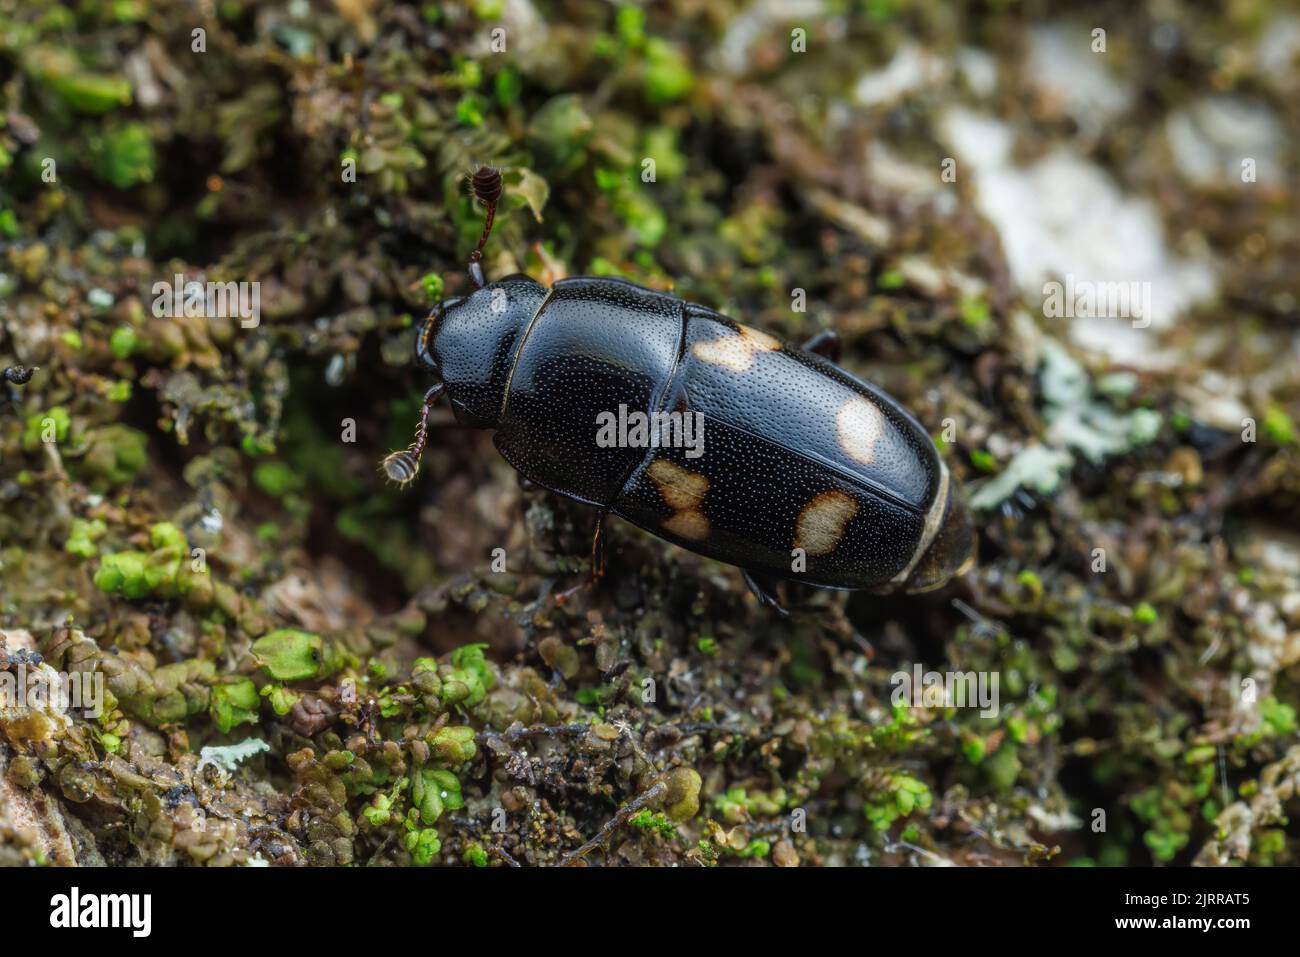 Four-spotted Sap Beetle (Glischrochilus quadrisignatus) Stock Photo